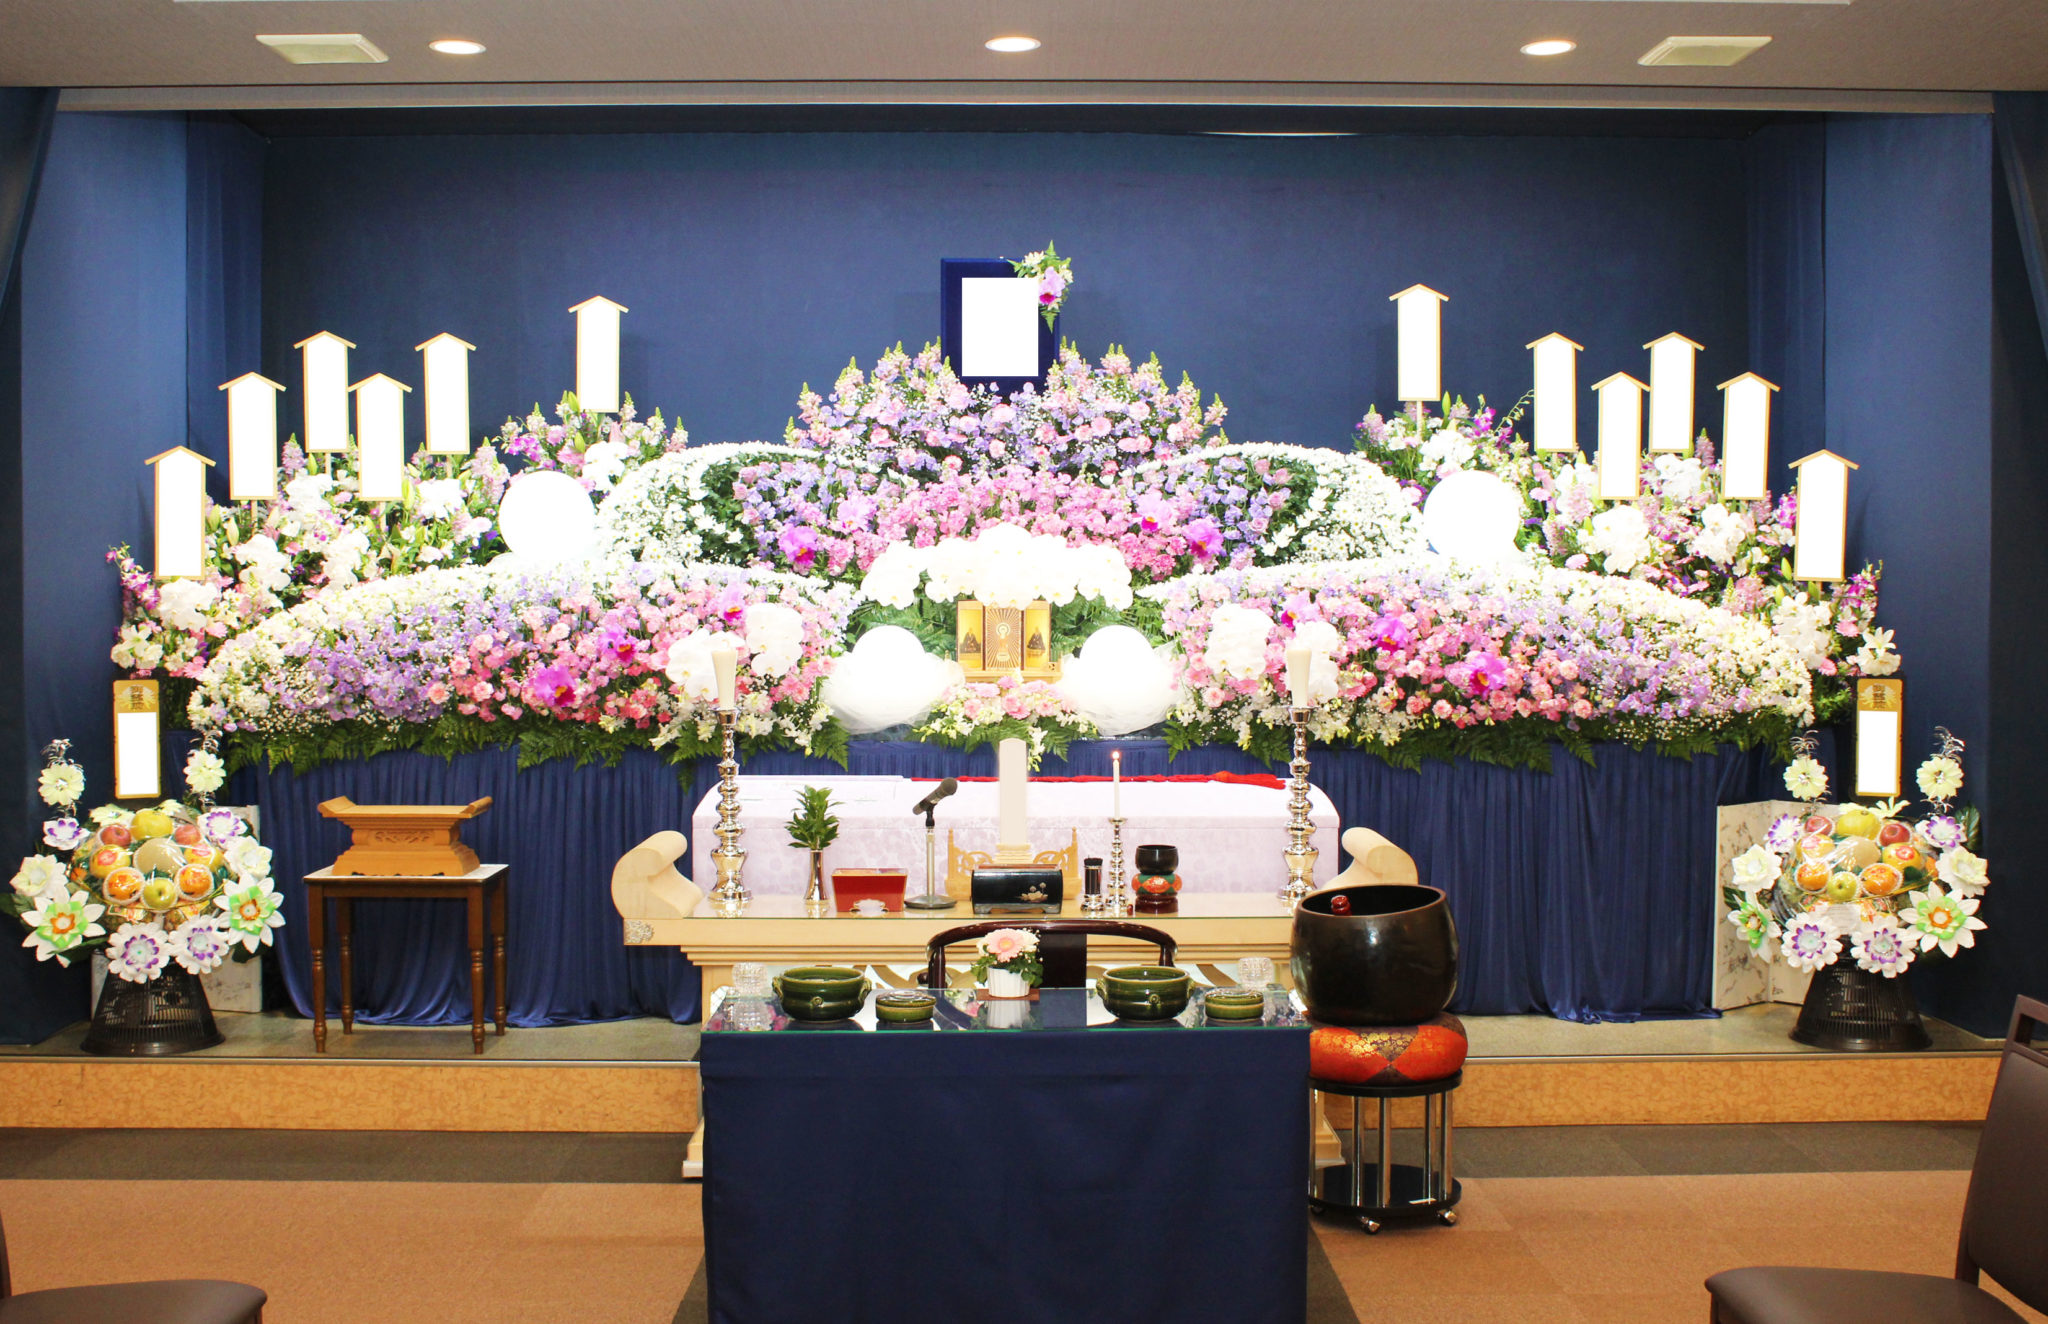 お花いっぱいの祭壇で送ったお葬式 横浜の葬儀 葬式 家族葬なら横浜セレモ株式会社